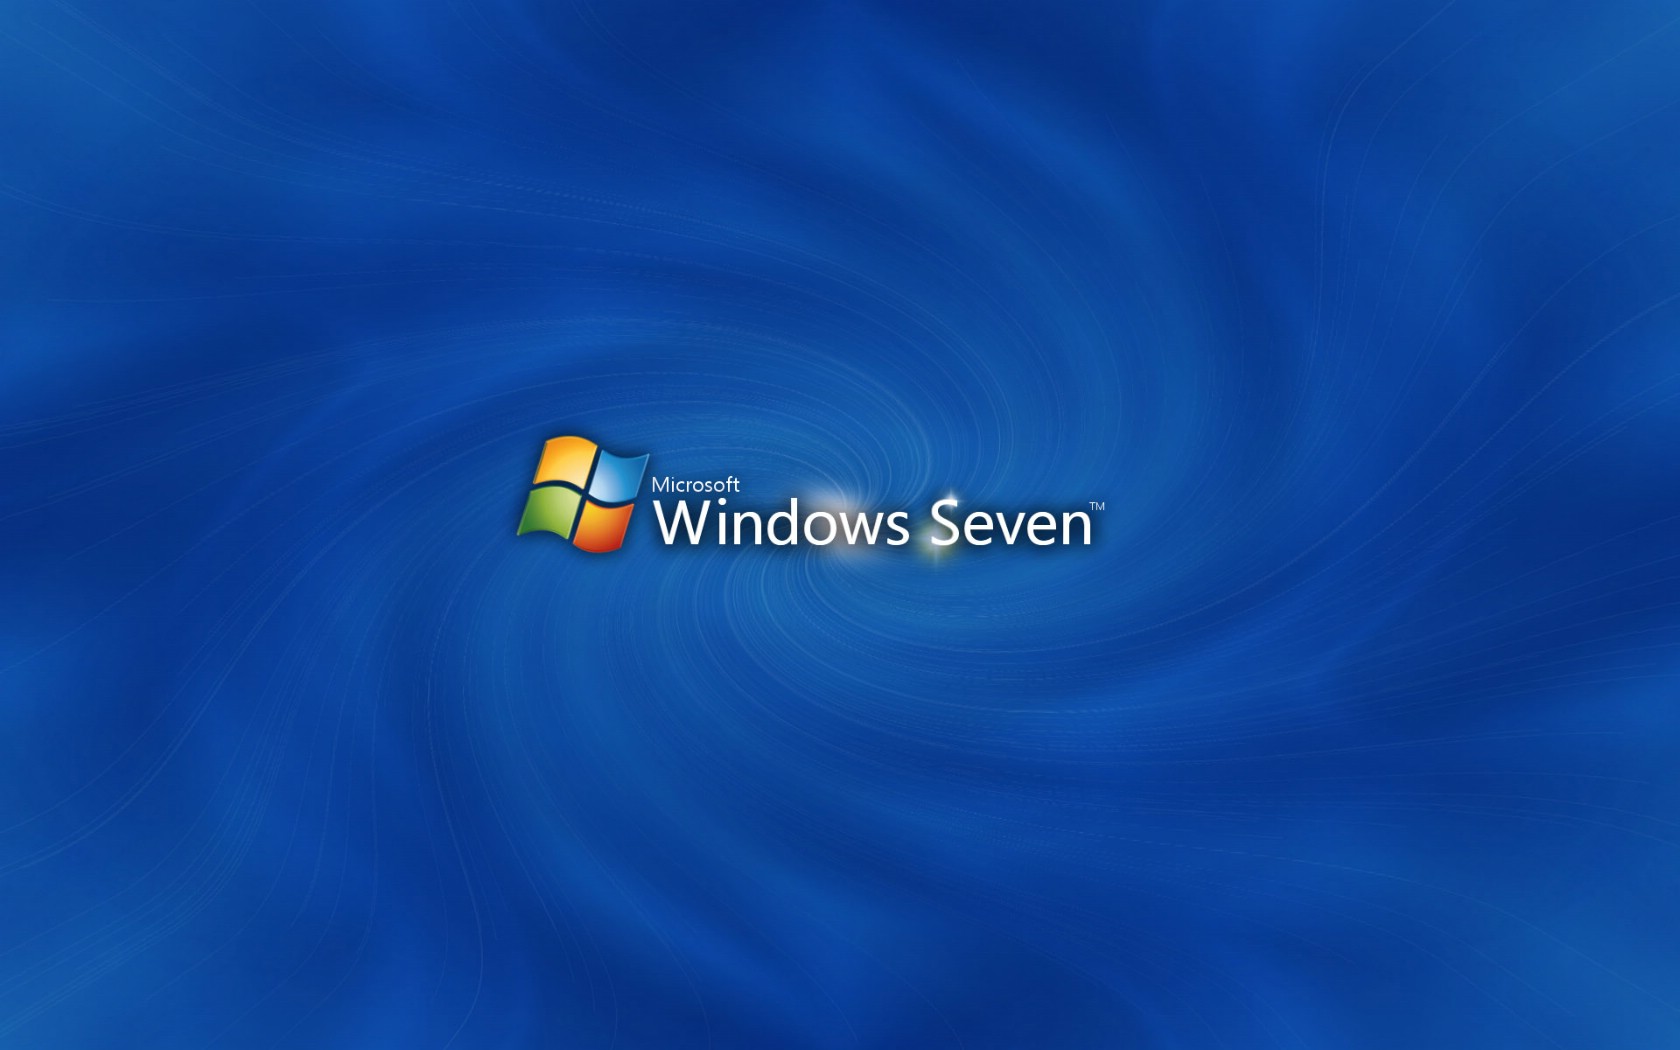 壁纸1680x1050Windows7 5 11壁纸 Windows7壁纸 Windows7图片 Windows7素材 系统壁纸 系统图库 系统图片素材桌面壁纸